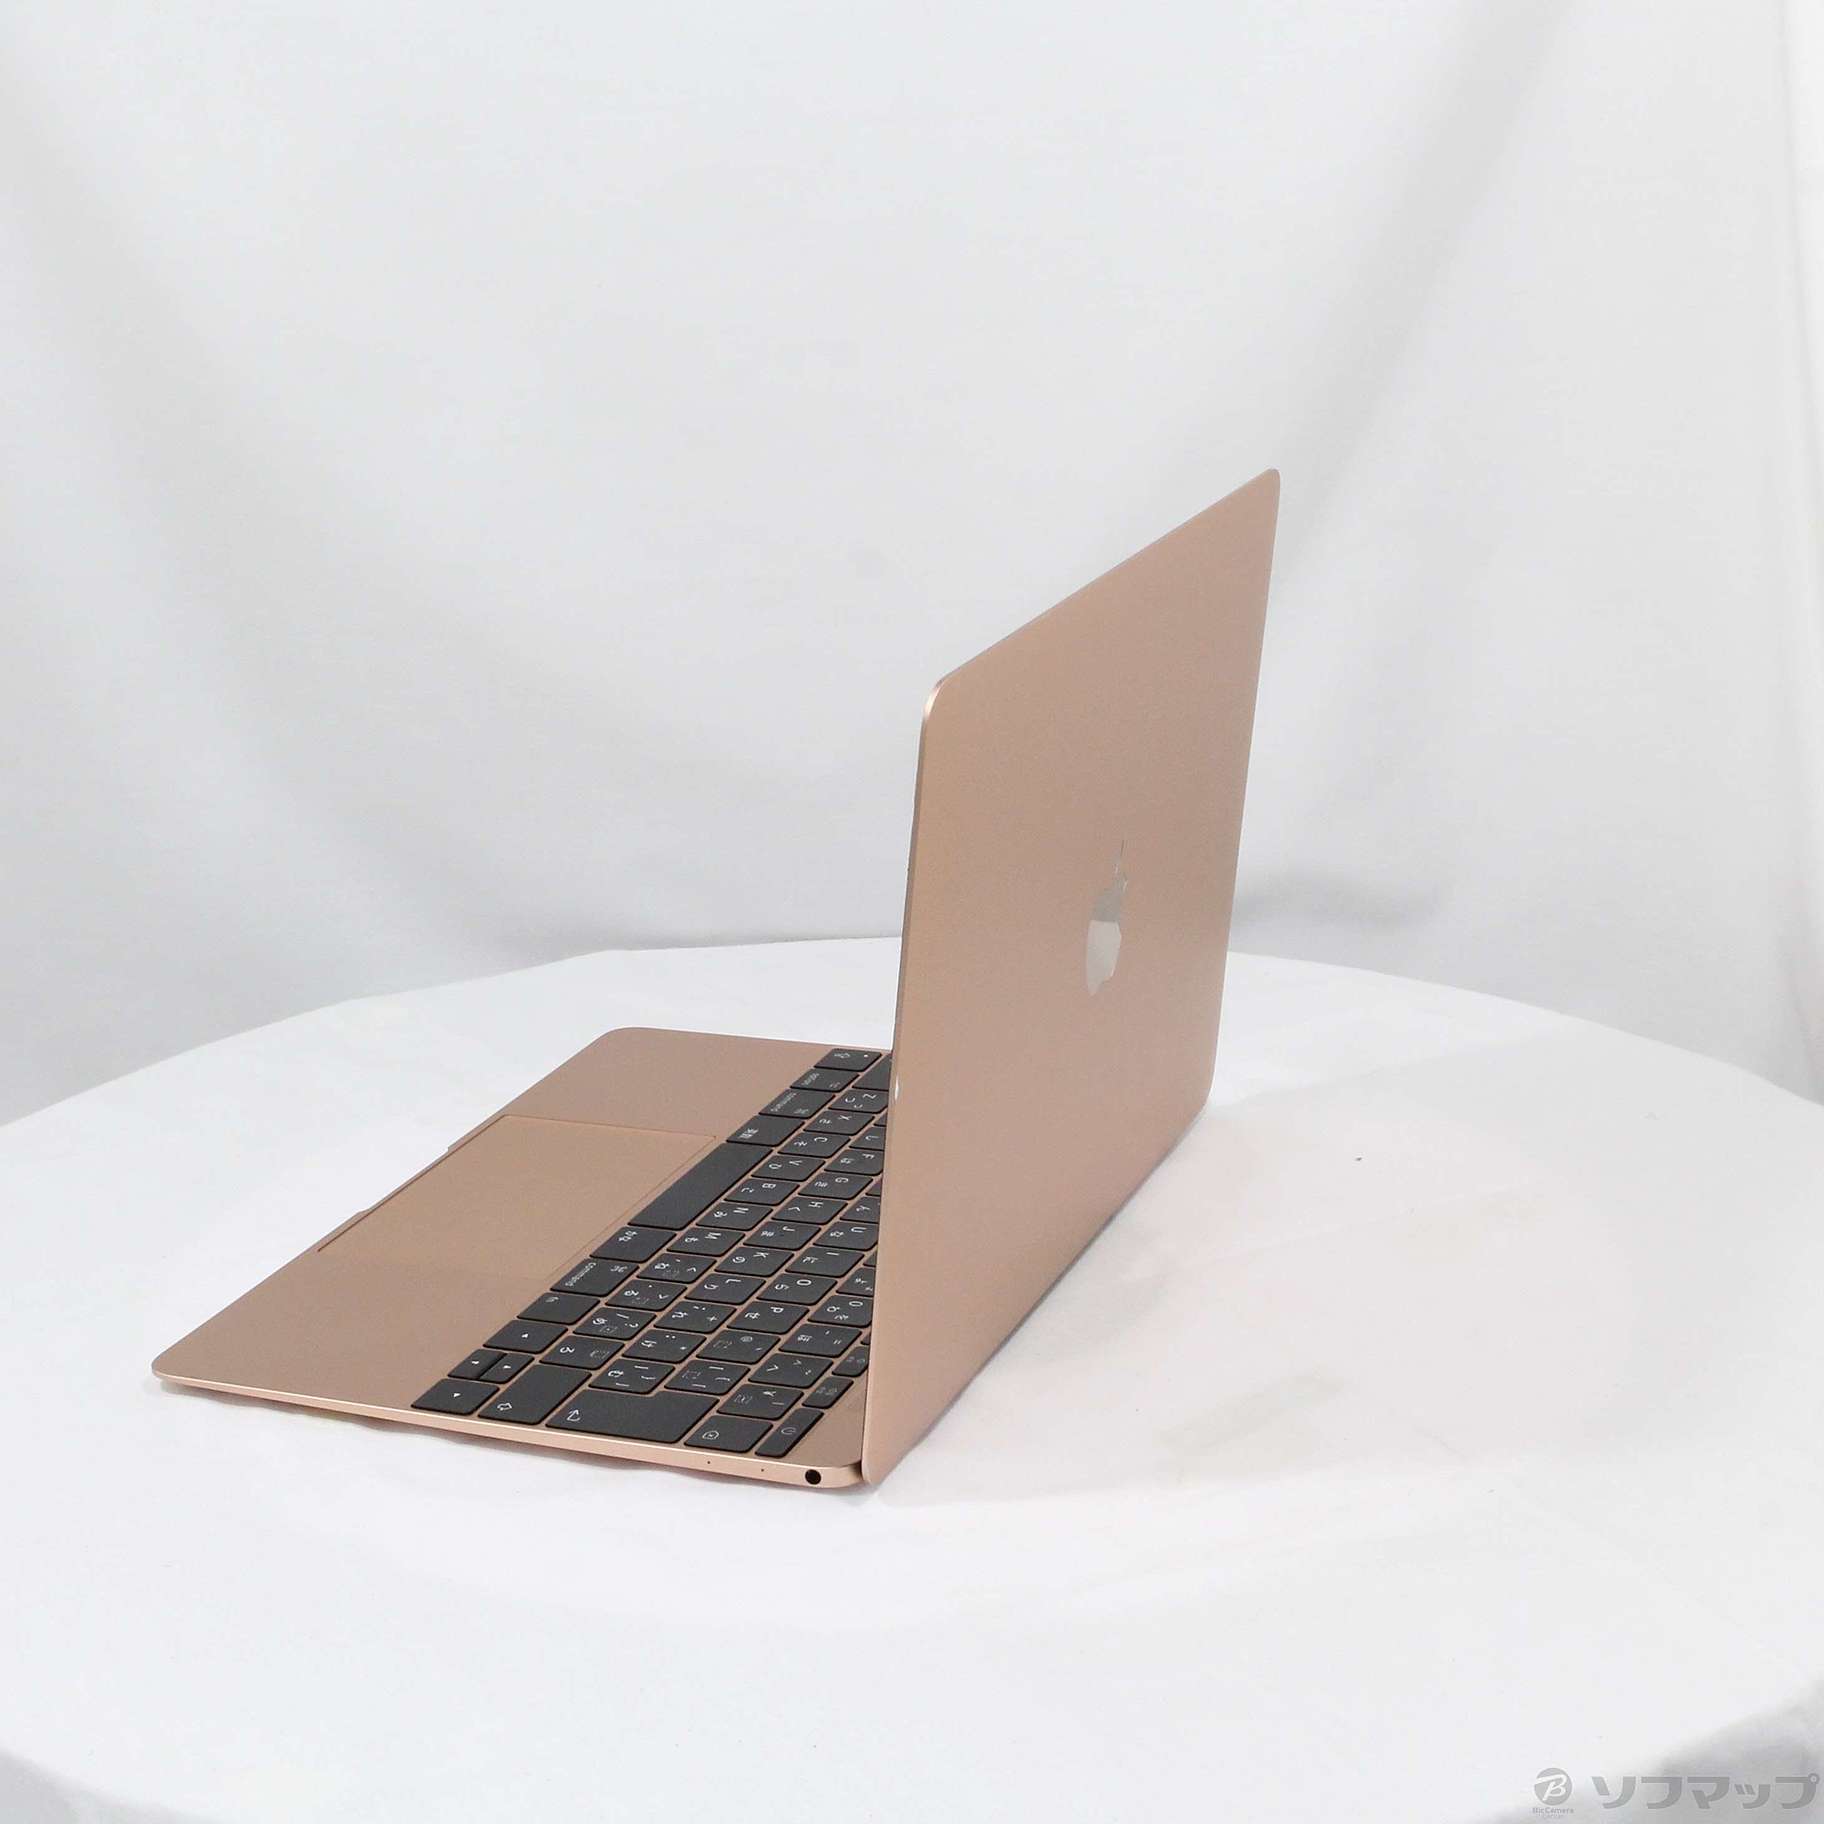 中古品〕 MacBook 12-inch Mid 2017 MRQN2J／A Core_m3 1.2GHz 8GB